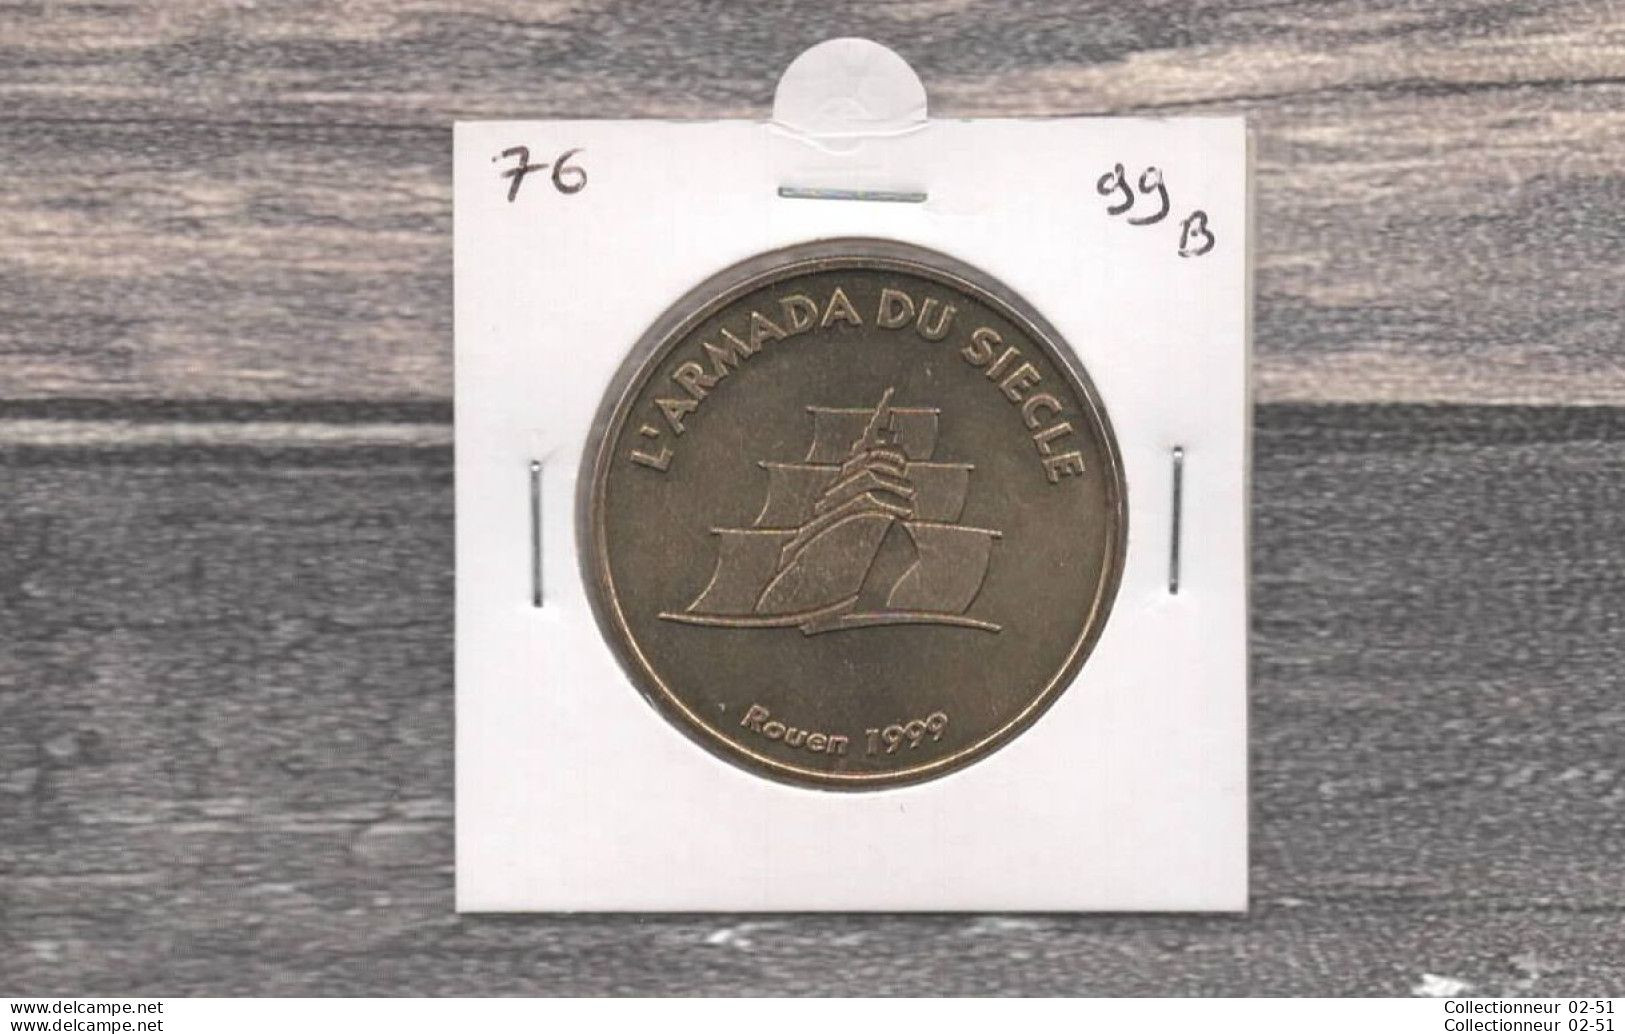 Monnaie De Paris : L'Armada Du Siècle - 1999 - Undated